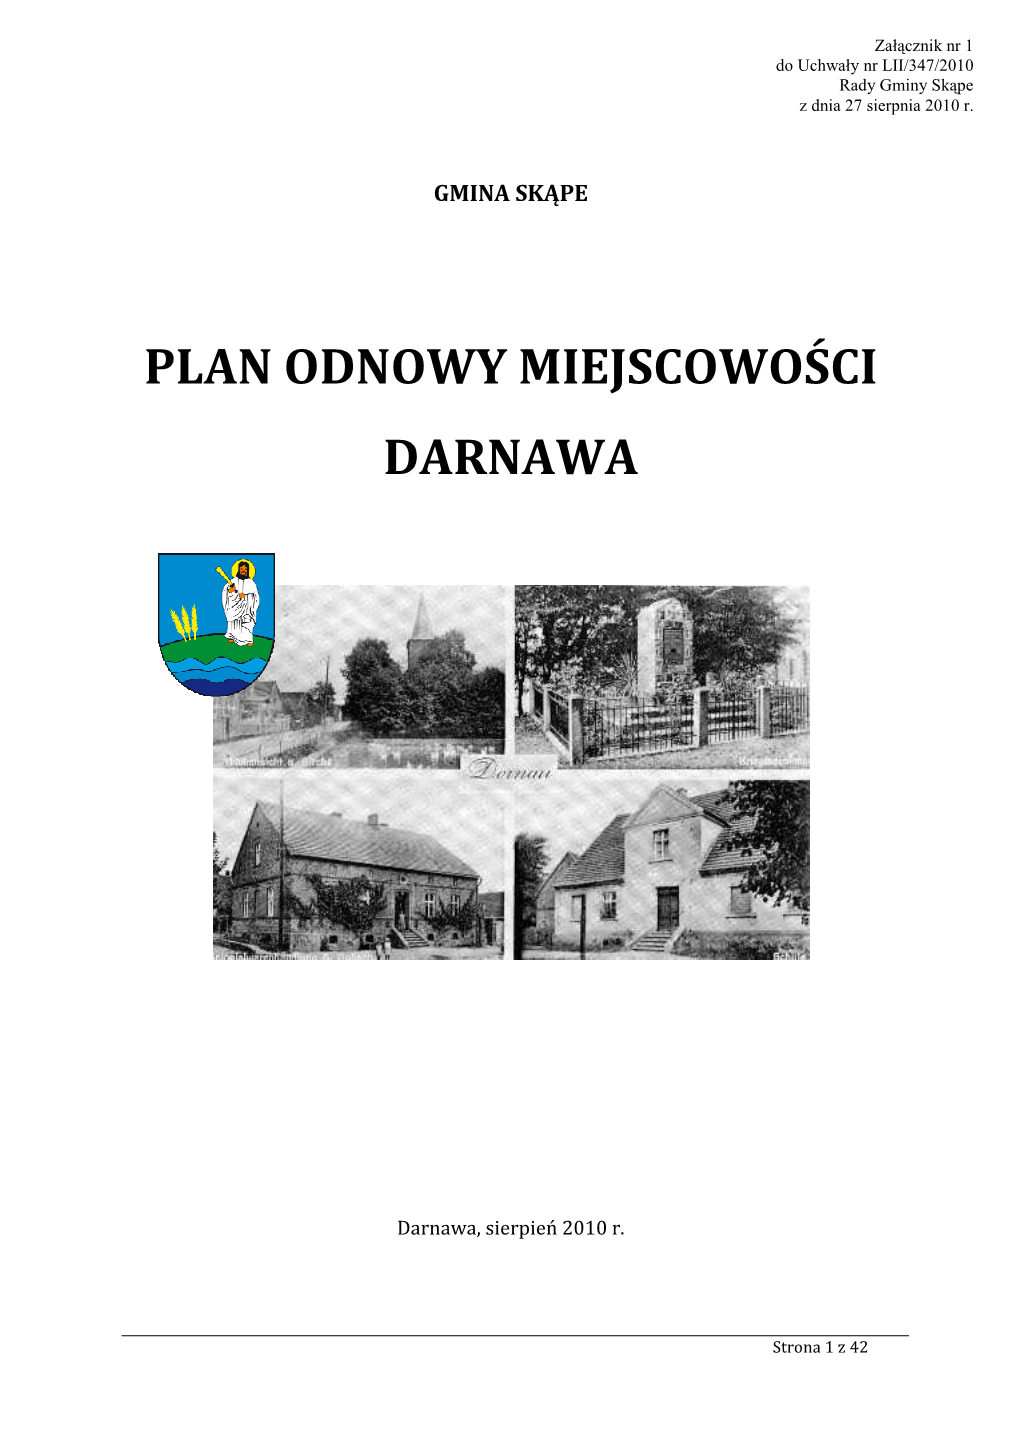 Plan Odnowy Miejscowości Darnawa